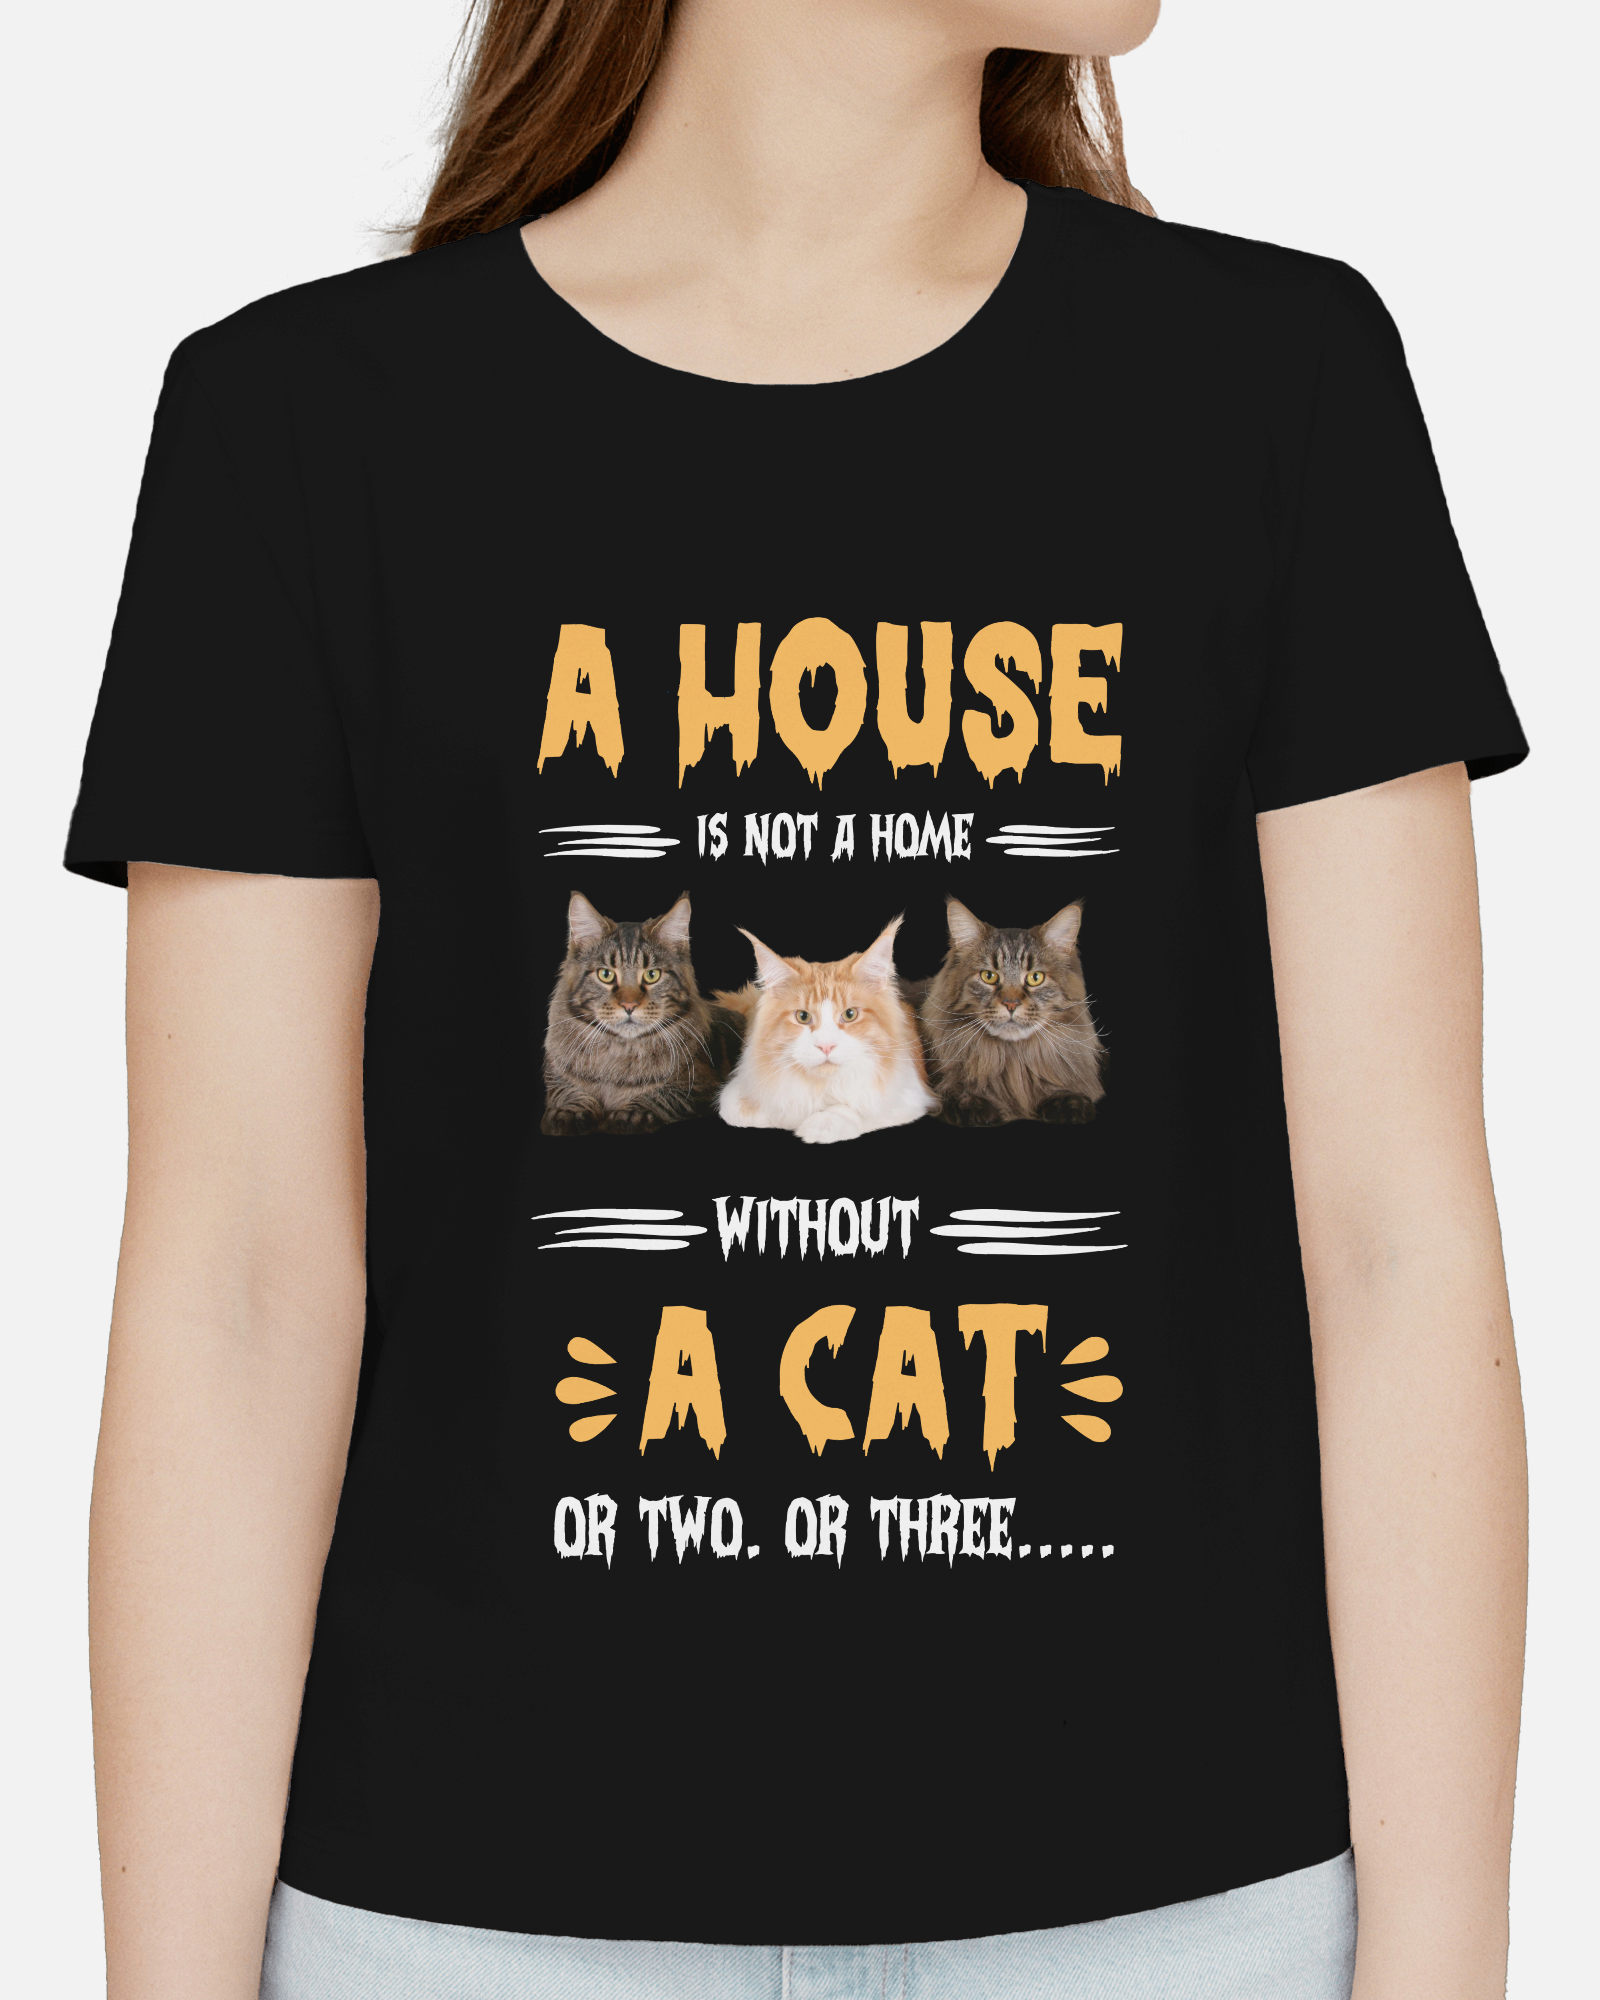 Cat shirt for women